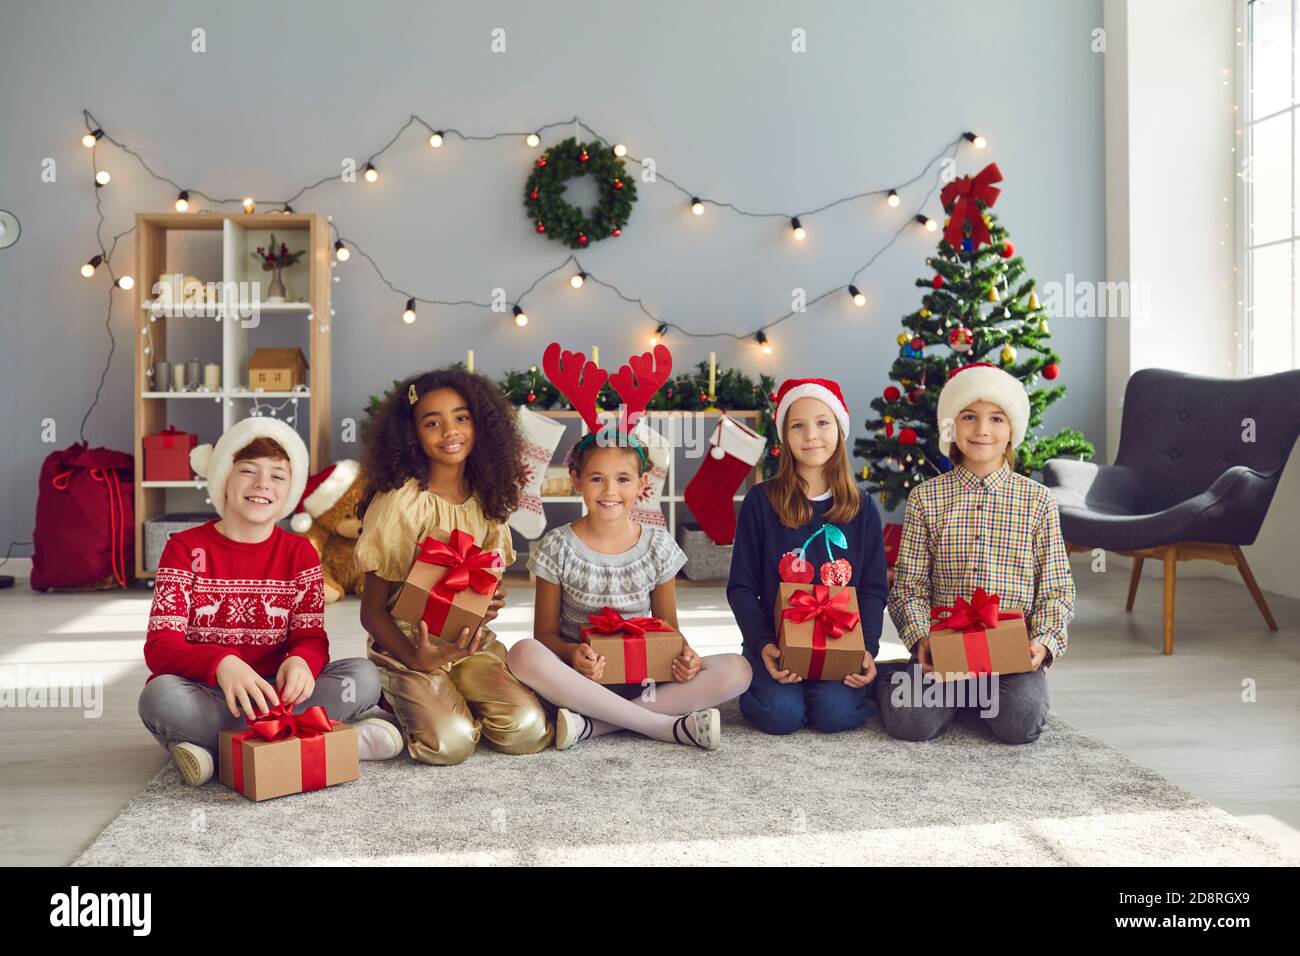 Felici i bambini seduti sul pavimento a casa, tenendo i loro regali di Natale e guardando la macchina fotografica Foto Stock